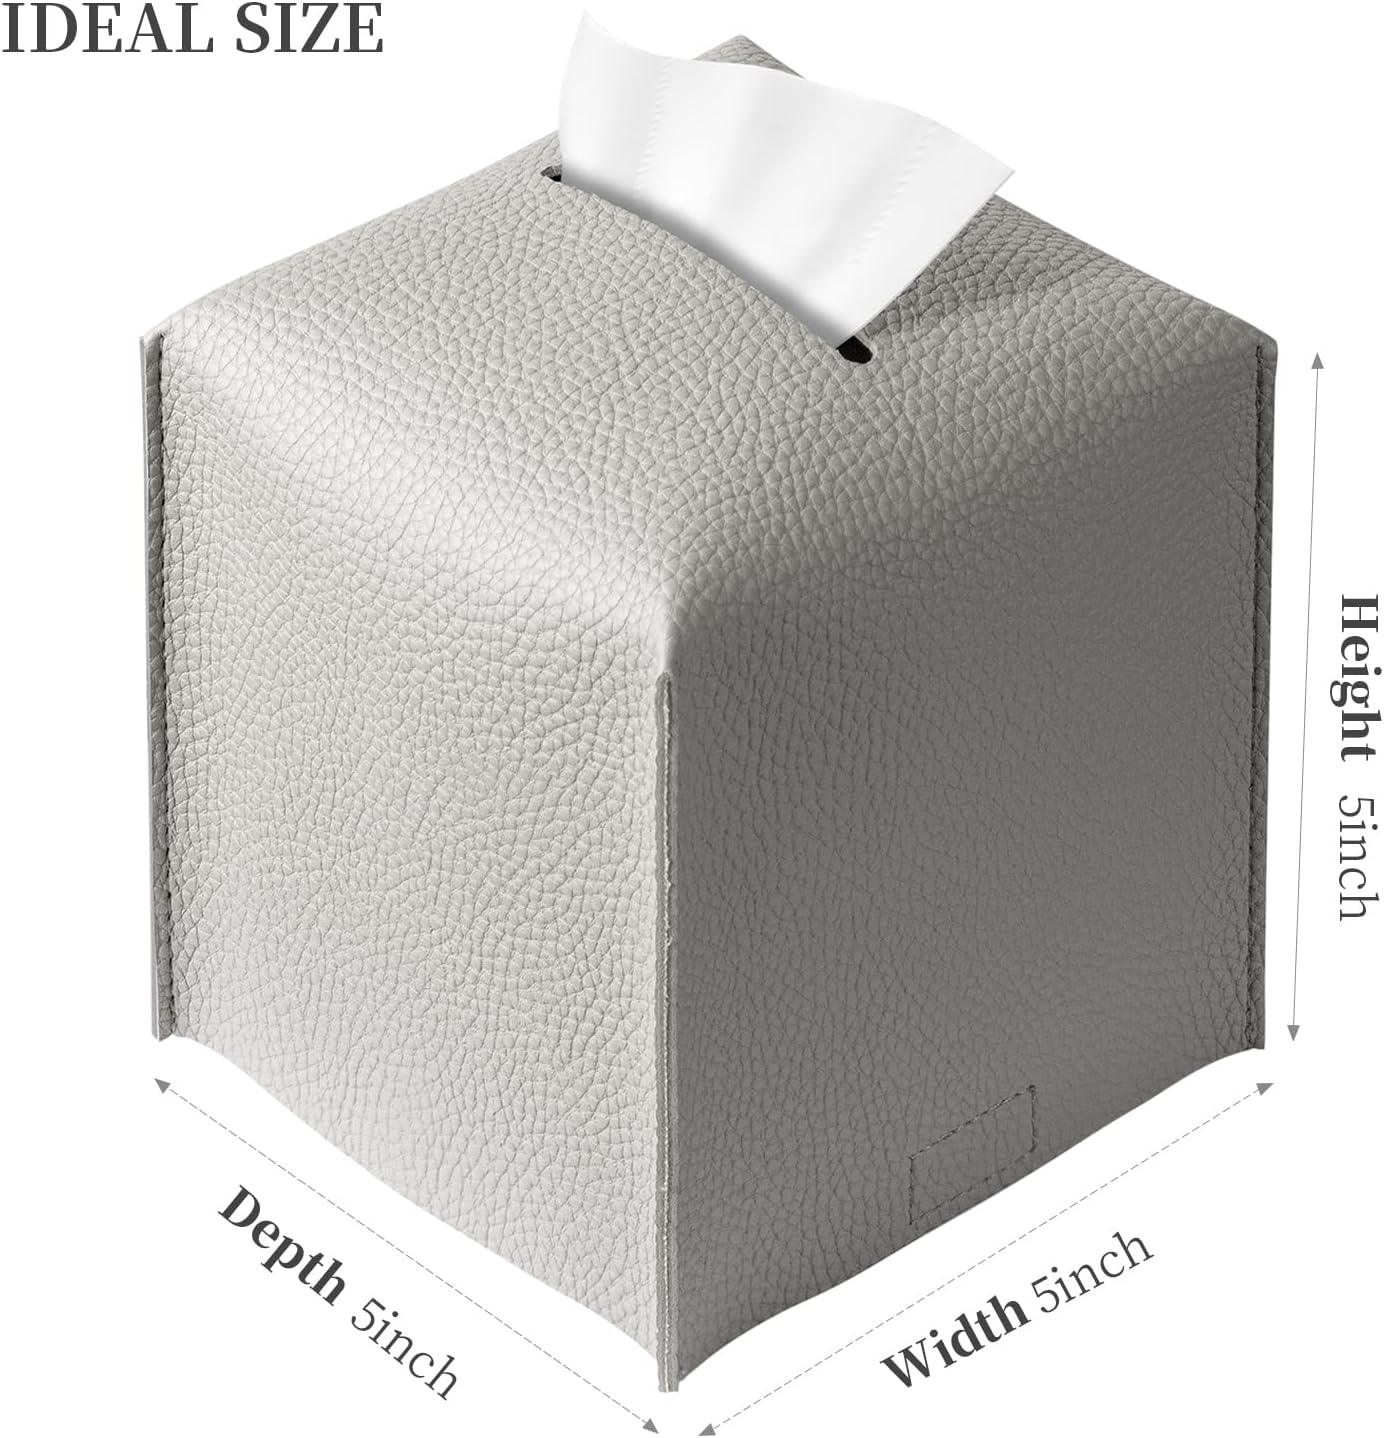 Paquete de 2 fundas para caja de pañuelos grises, soporte cuadrado de piel - VIRTUAL MUEBLES